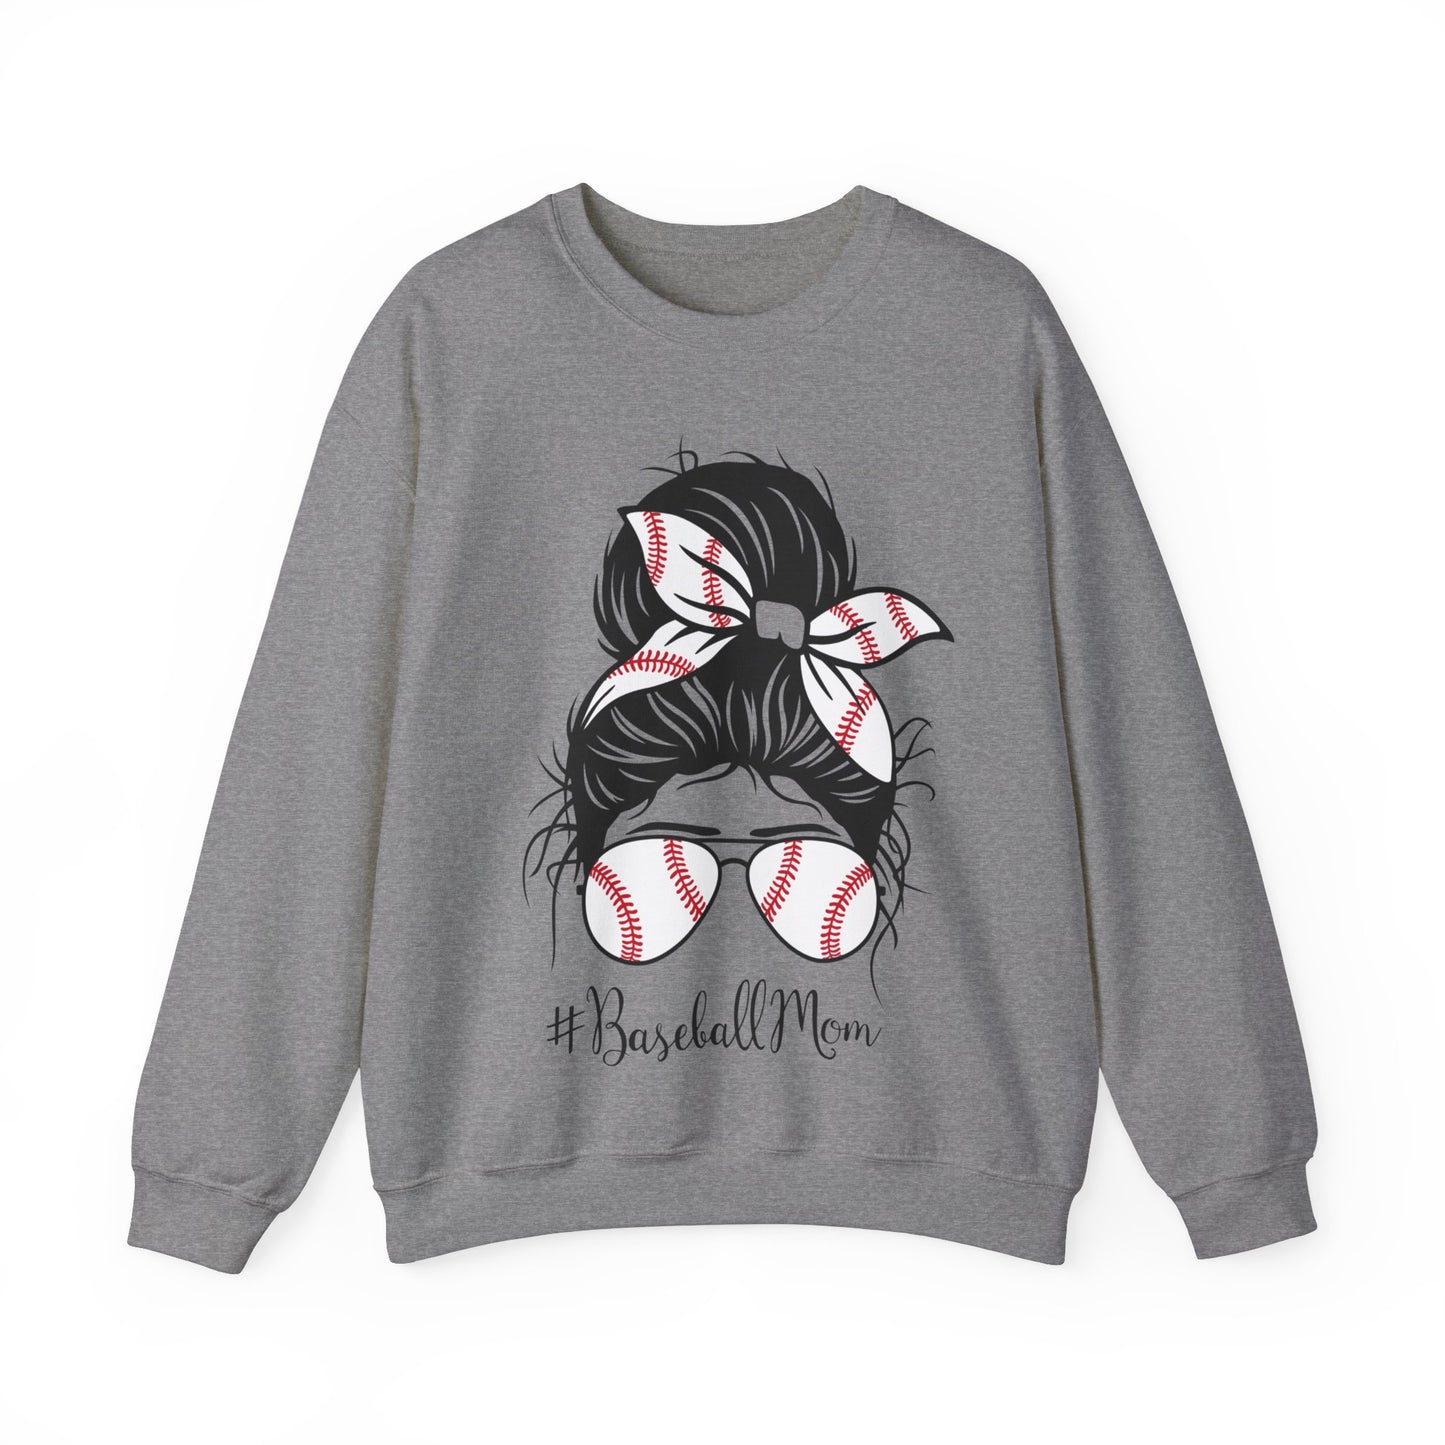 Baseball Mom - Crewneck Sweatshirt